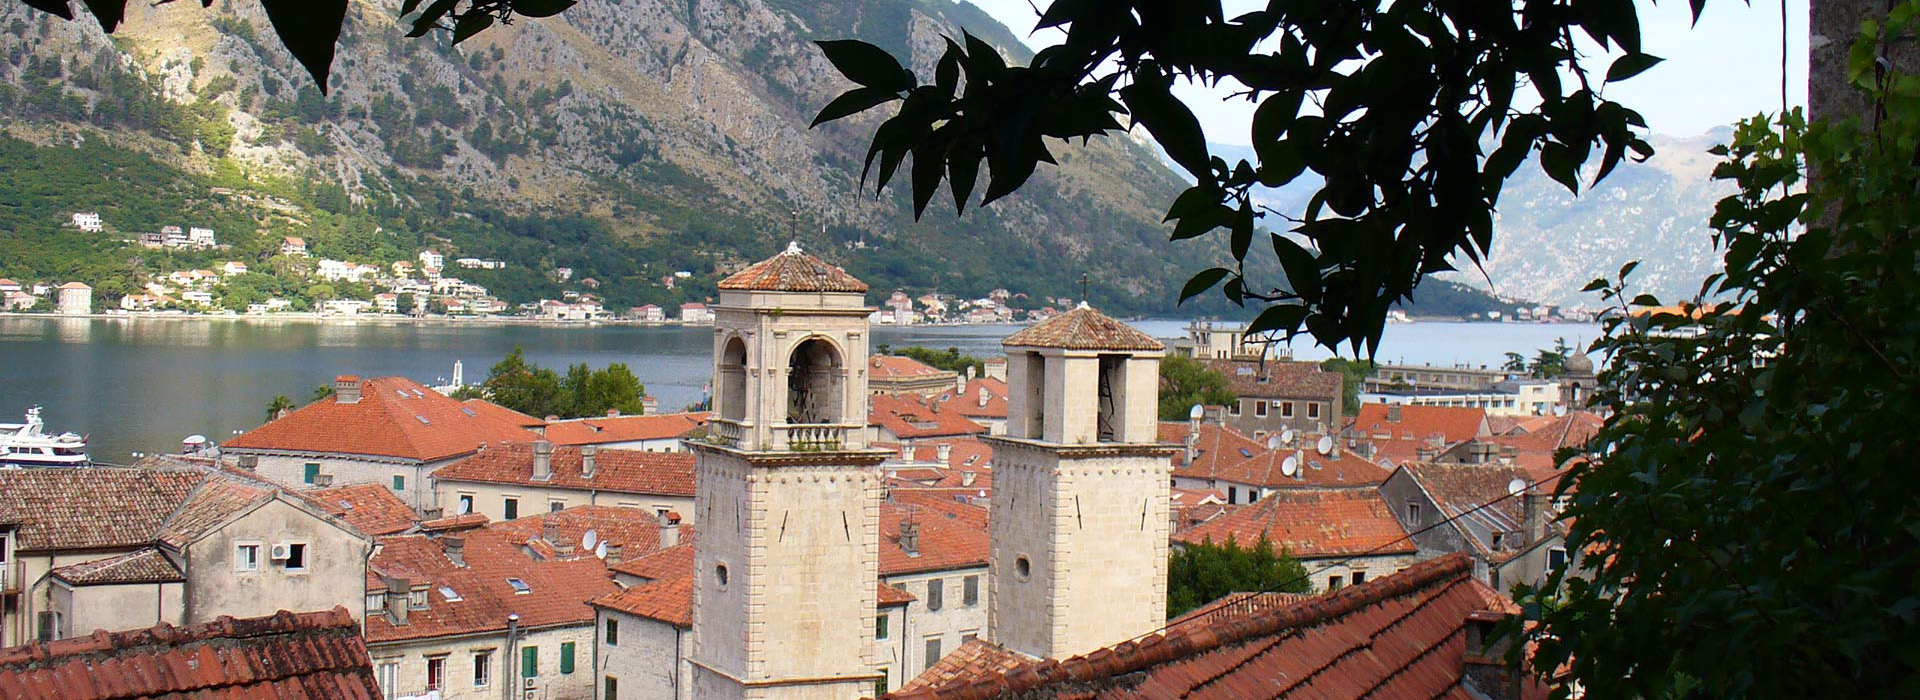 Montenegro walking guided holiday - Kotor